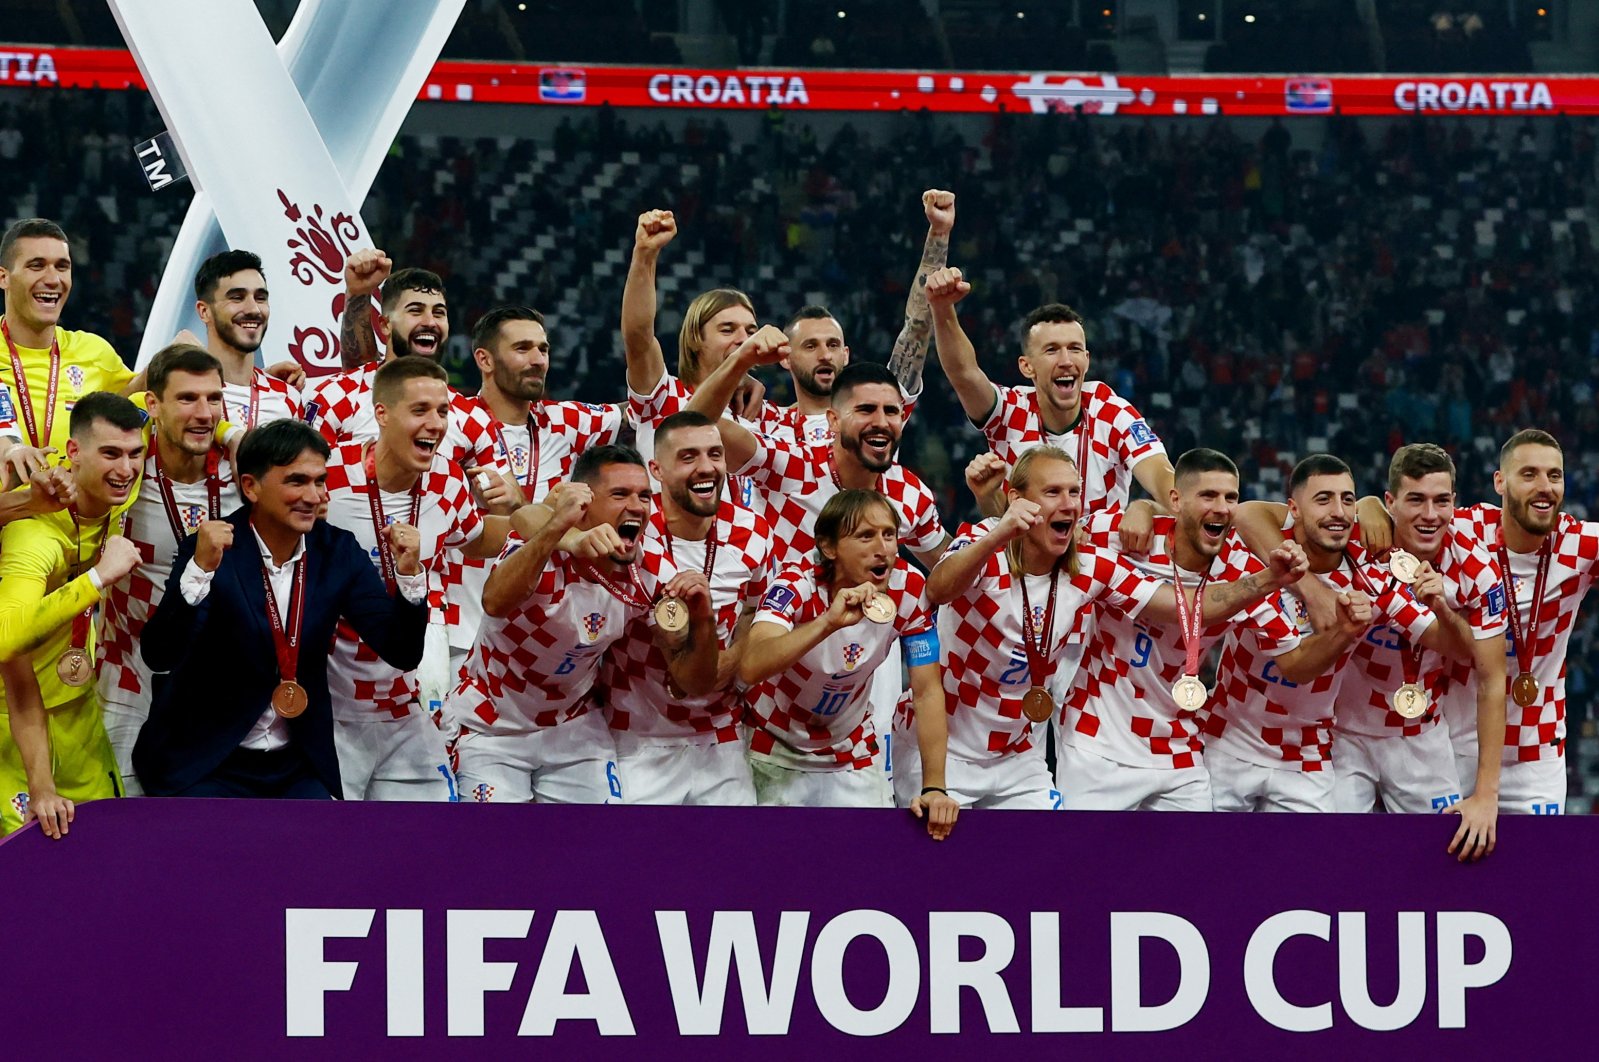 Kroasia meraih tempat ke-3 di Piala Dunia dengan kemenangan 2-1 atas Maroko